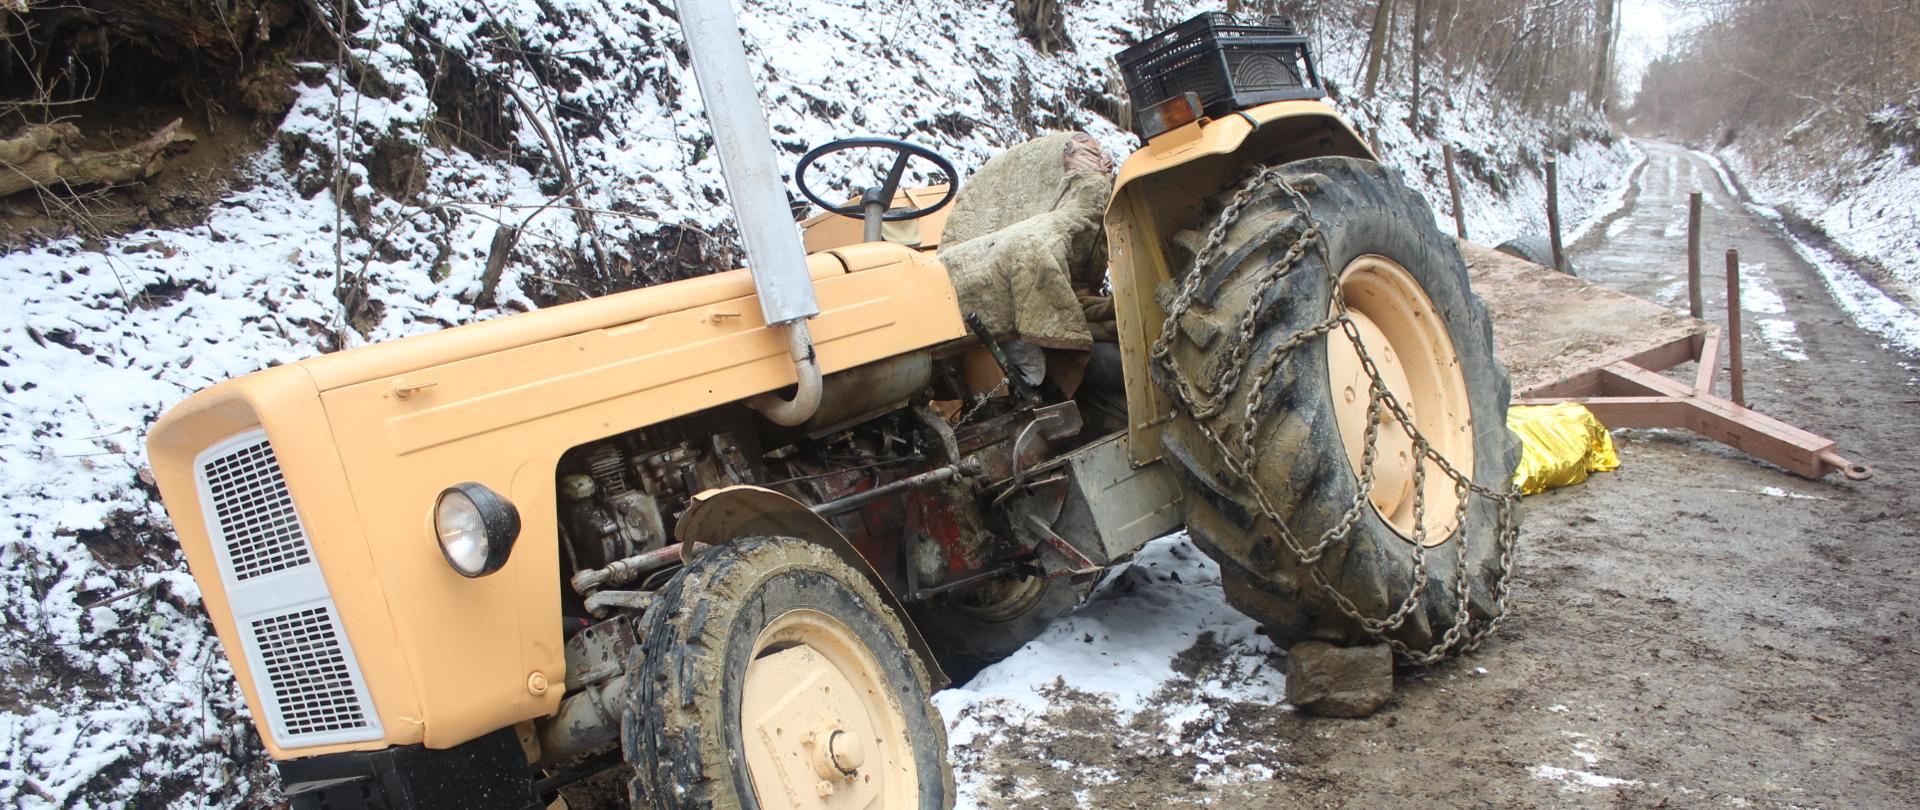 Zdjęcie przedstawia ciągnik rolniczy marki Ursus C-360 stojący w przydrożnym rowie przechylony na swoją lewą stronę